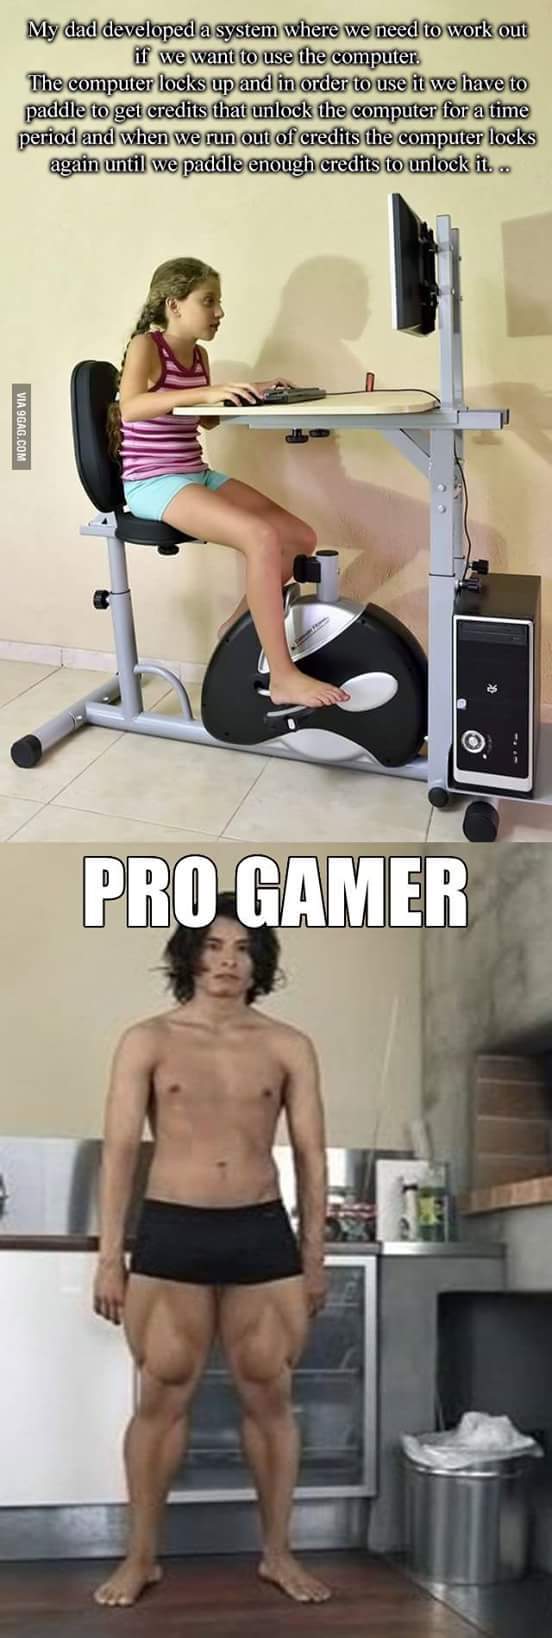 Pro gamer ! - meme